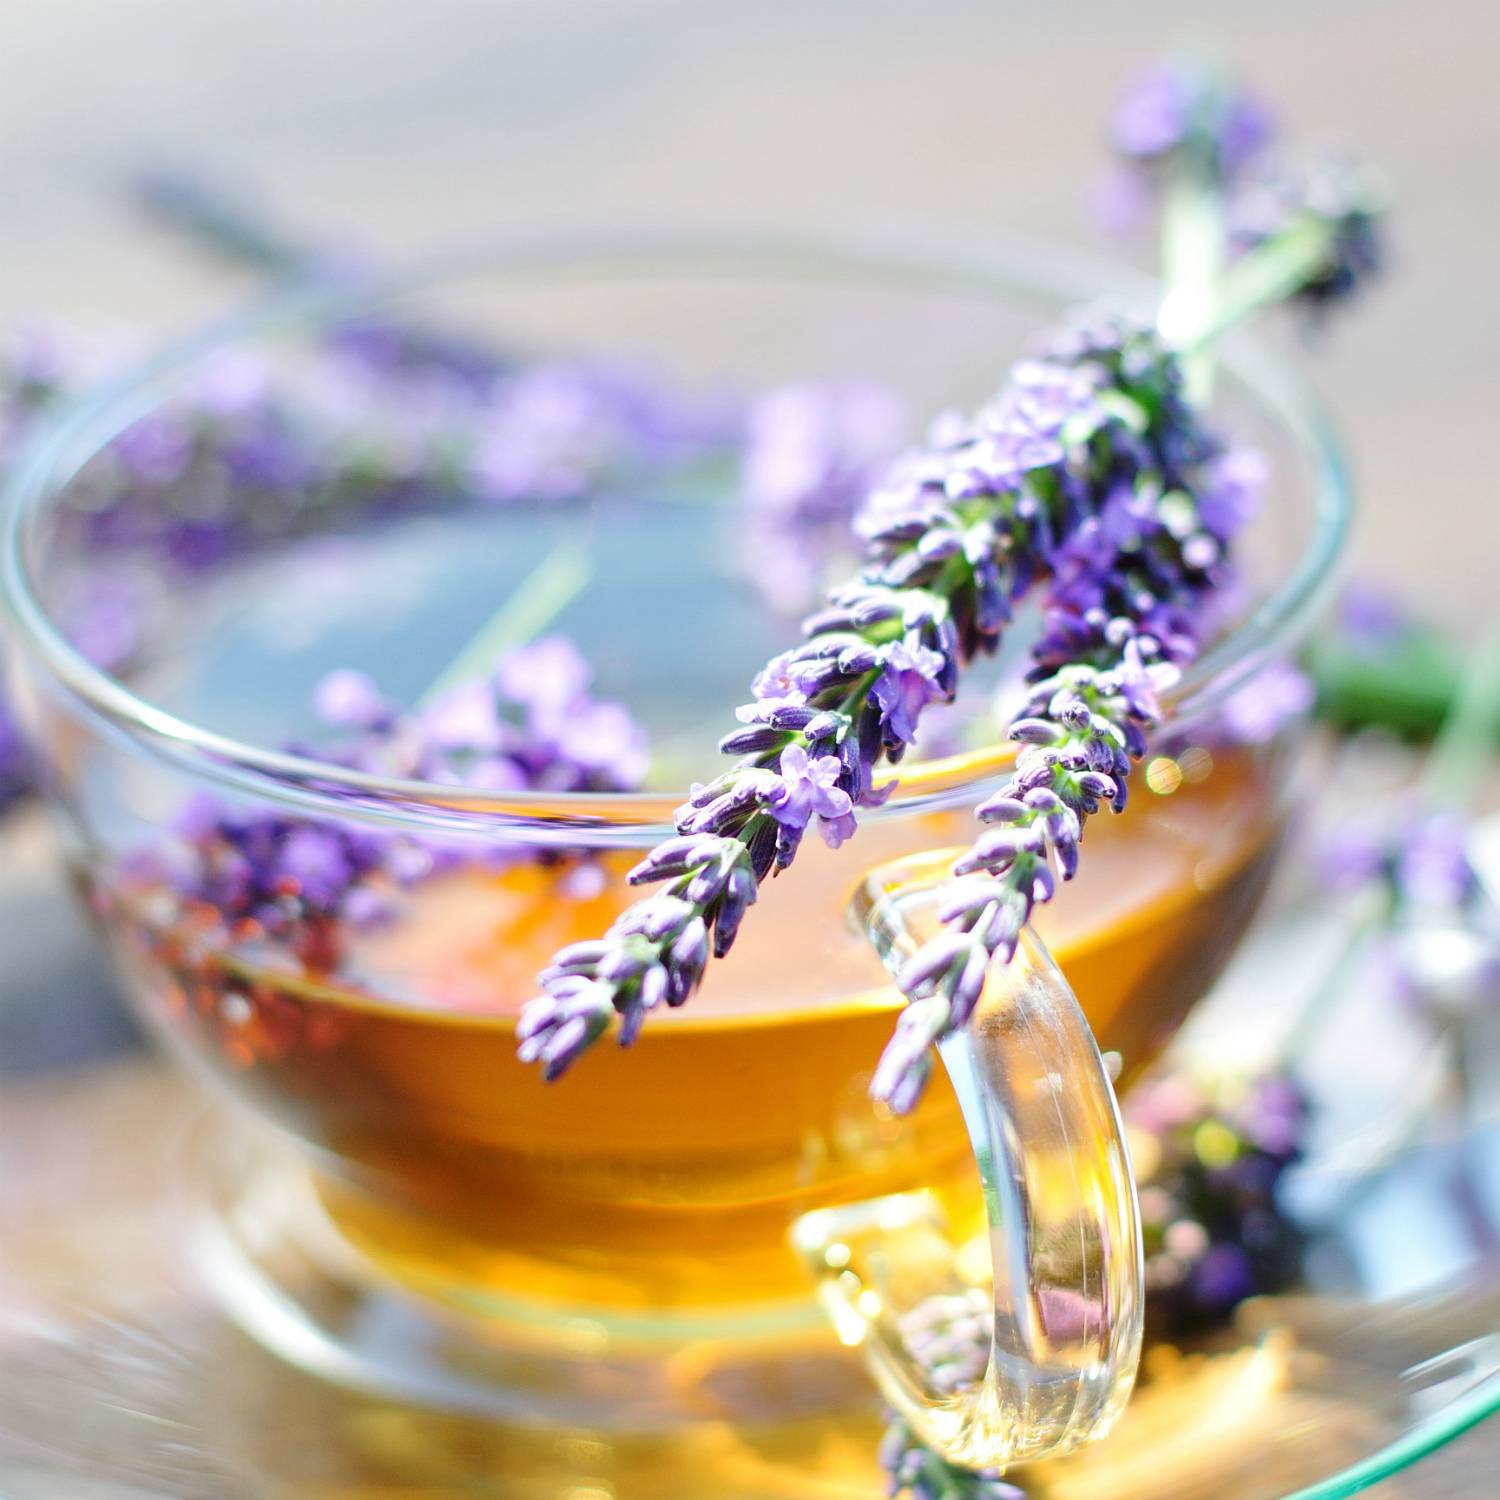 Ароматный цветок и вкусная приправа – как используют лаванду в кулинарии и медицине